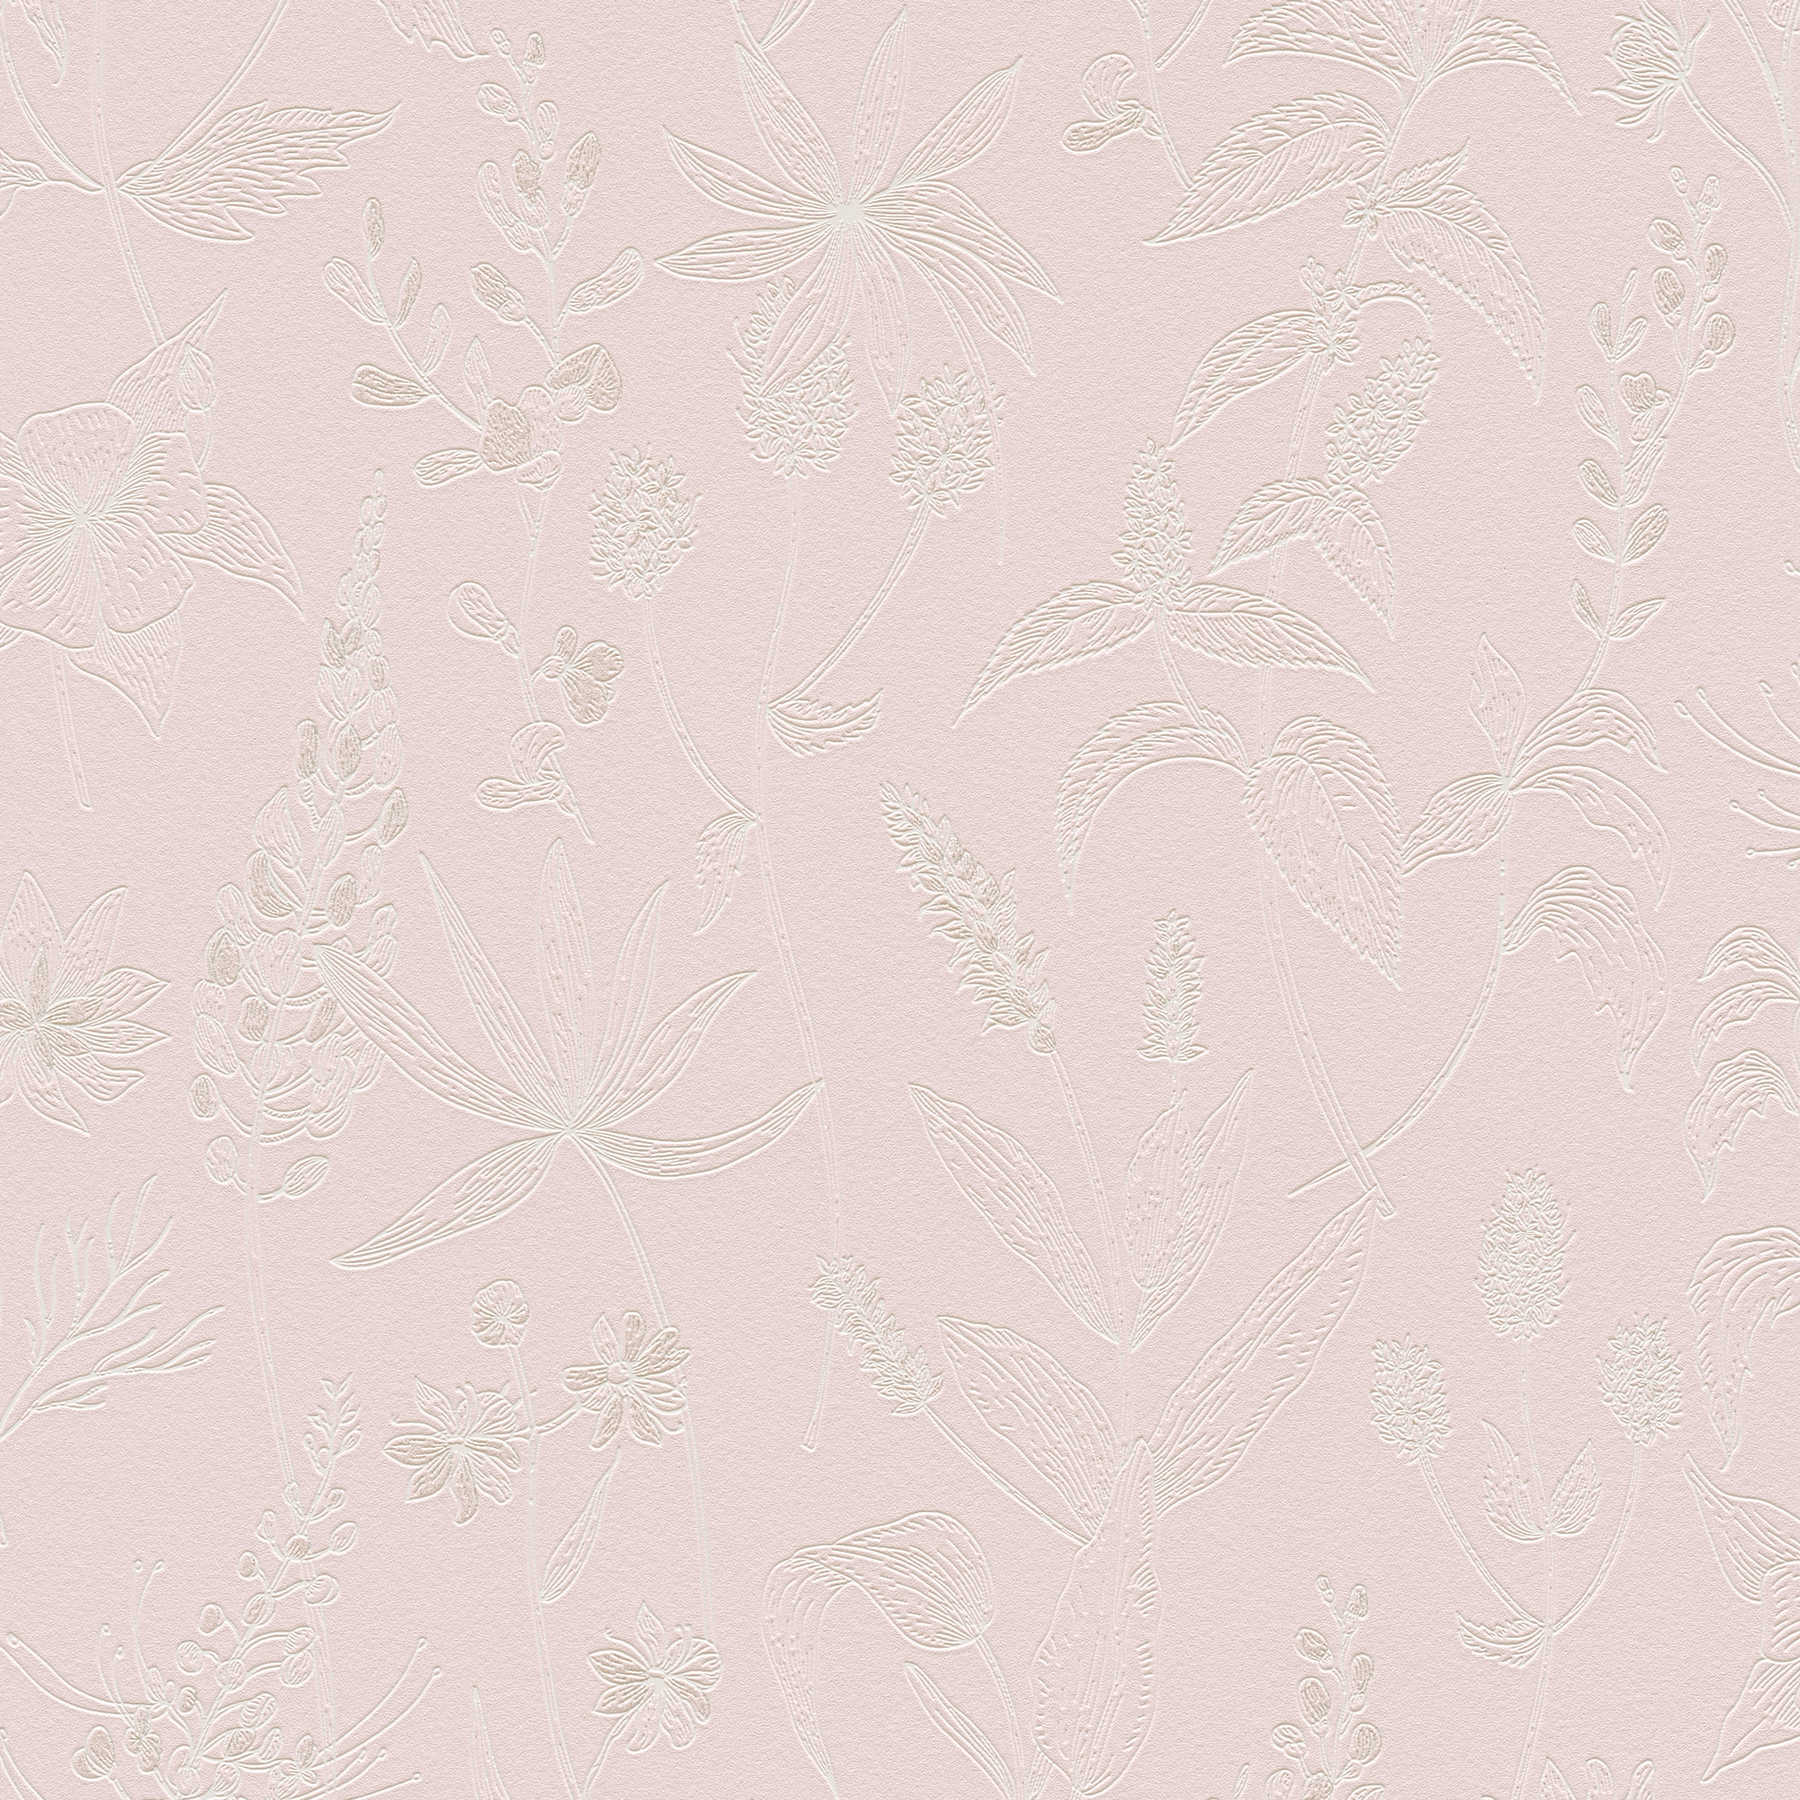 Papier peint intissé avec motif floral et accent métallique - rose, argent, blanc
